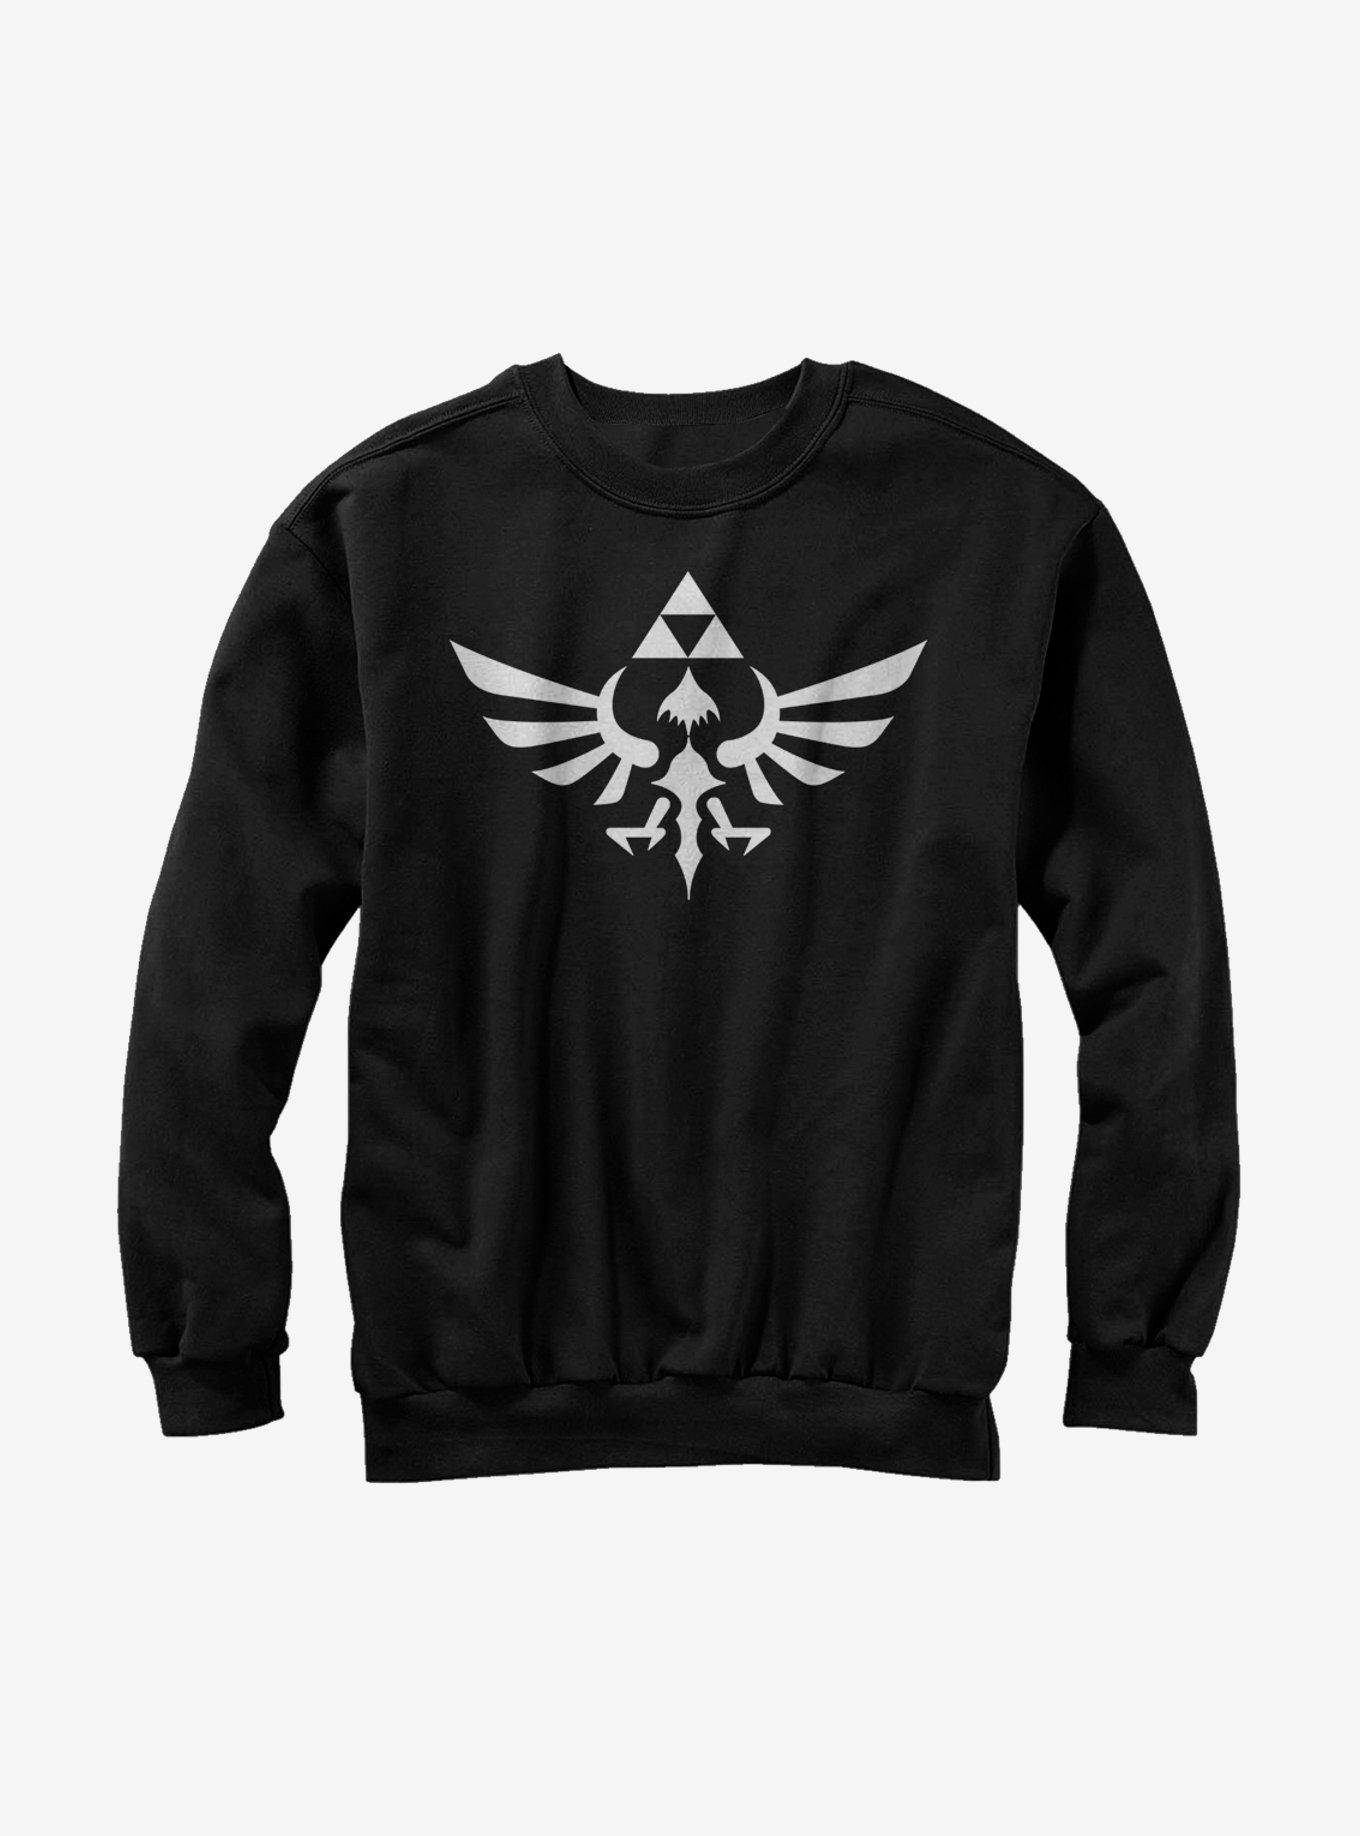 Nintendo Legend of Zelda Triforce Sweatshirt, BLACK, hi-res